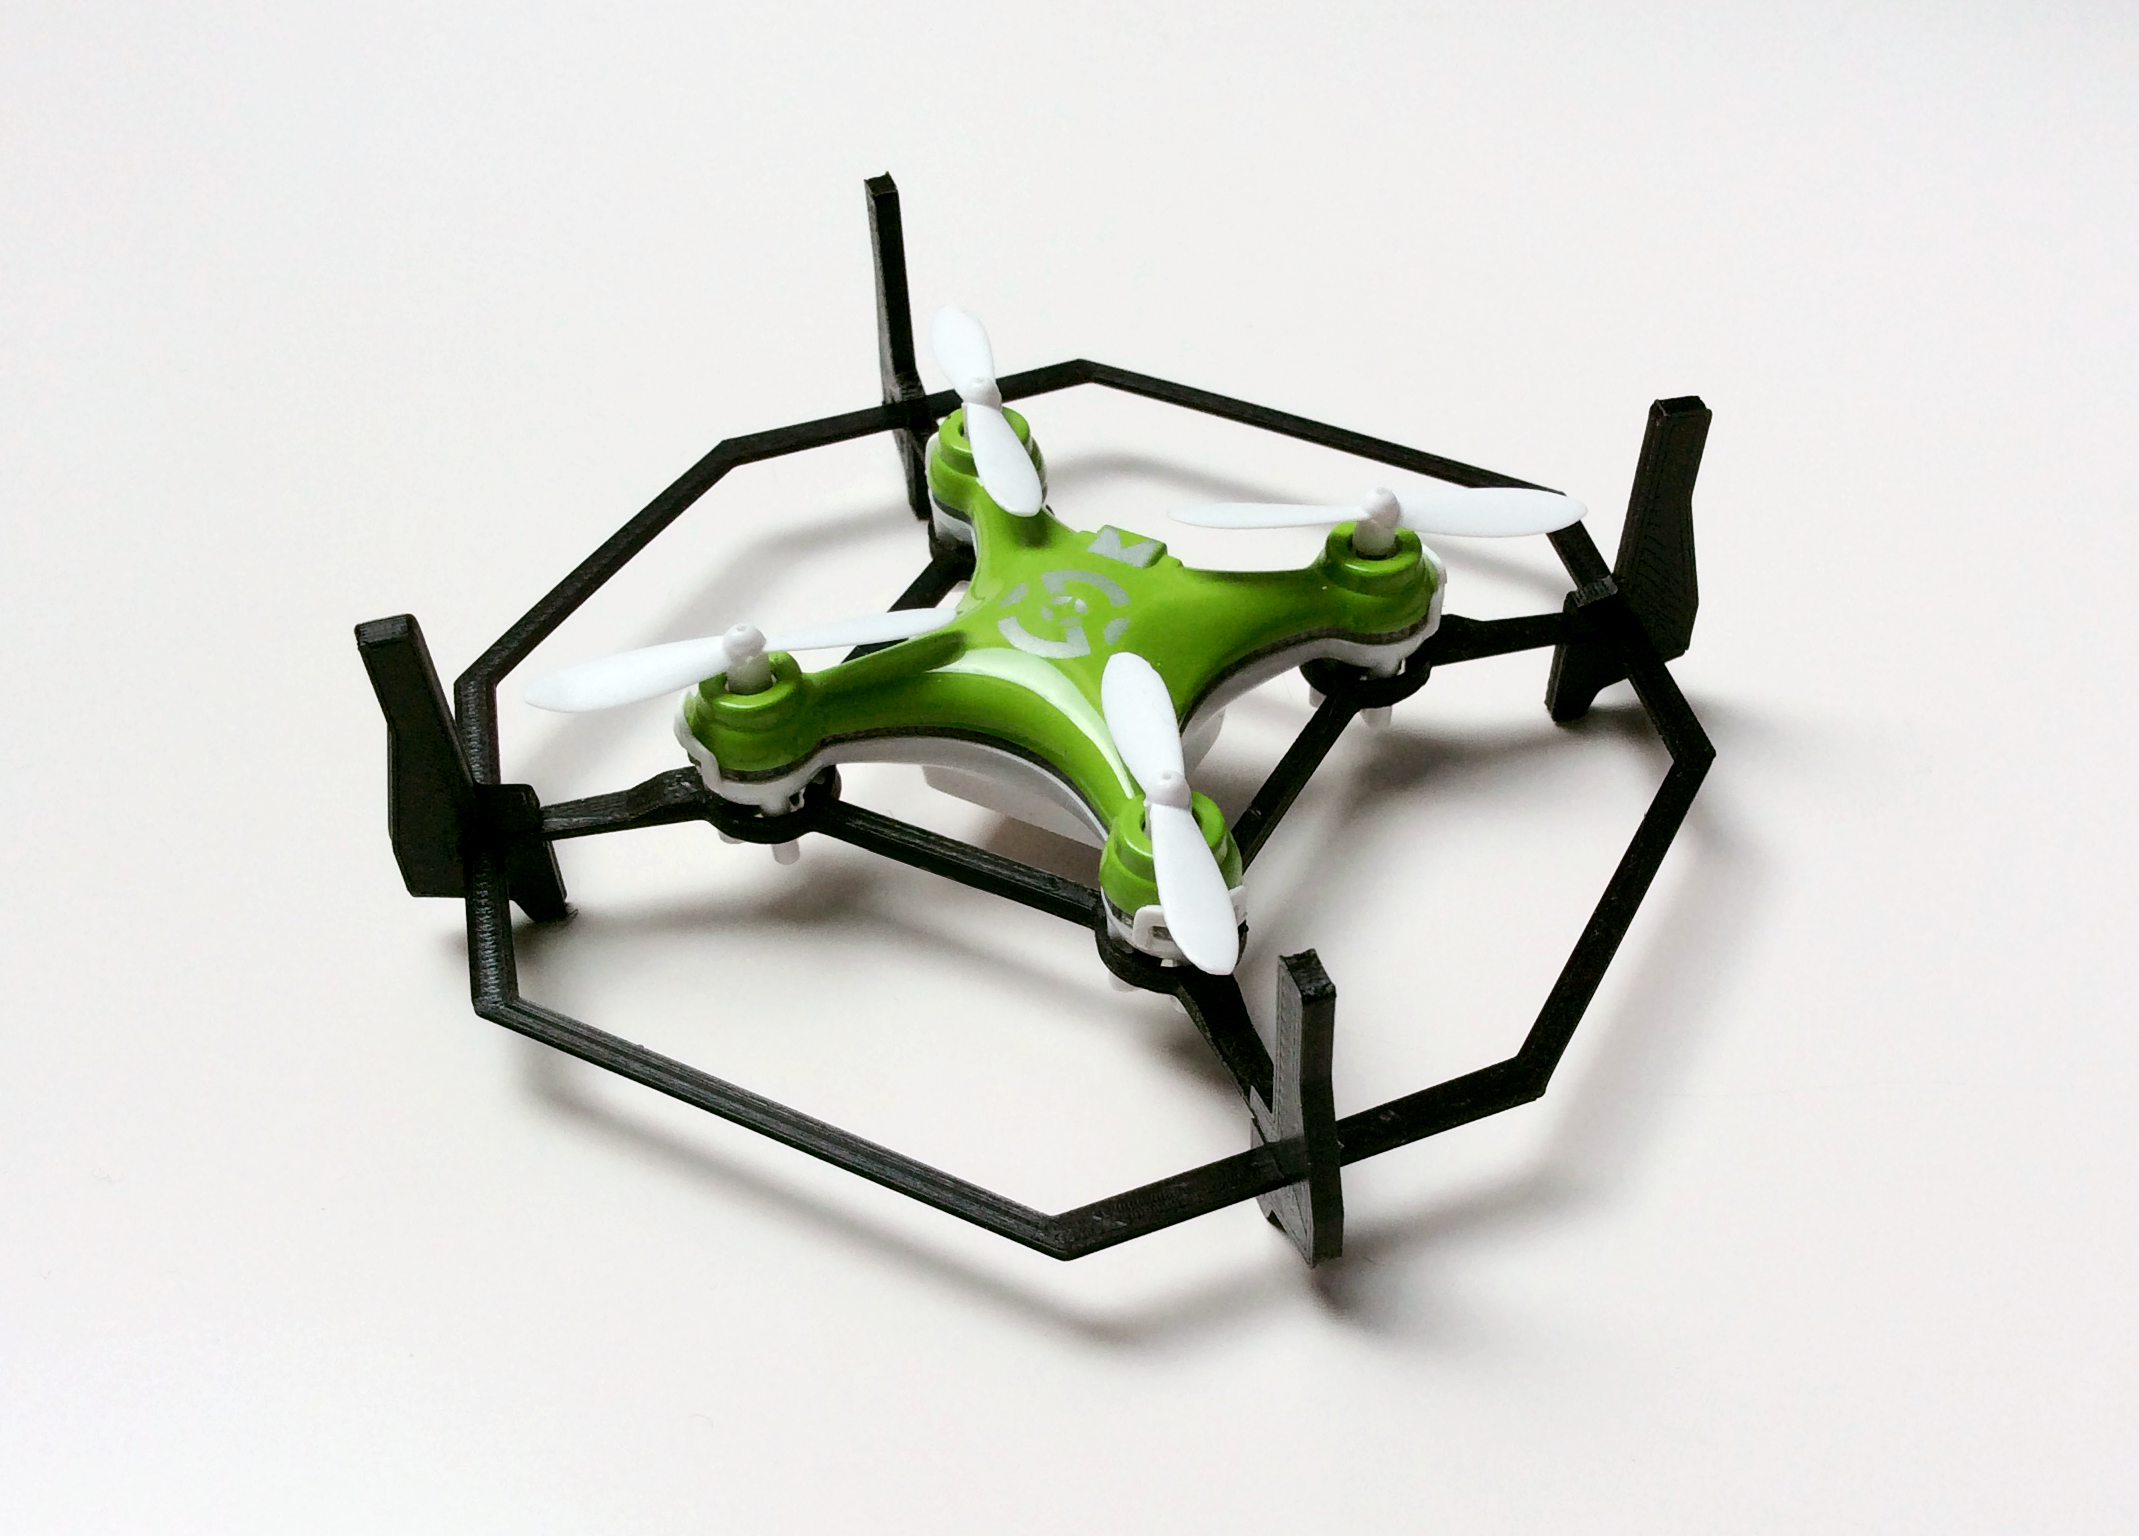 Drone Protection II (CX-10 Minidrone)